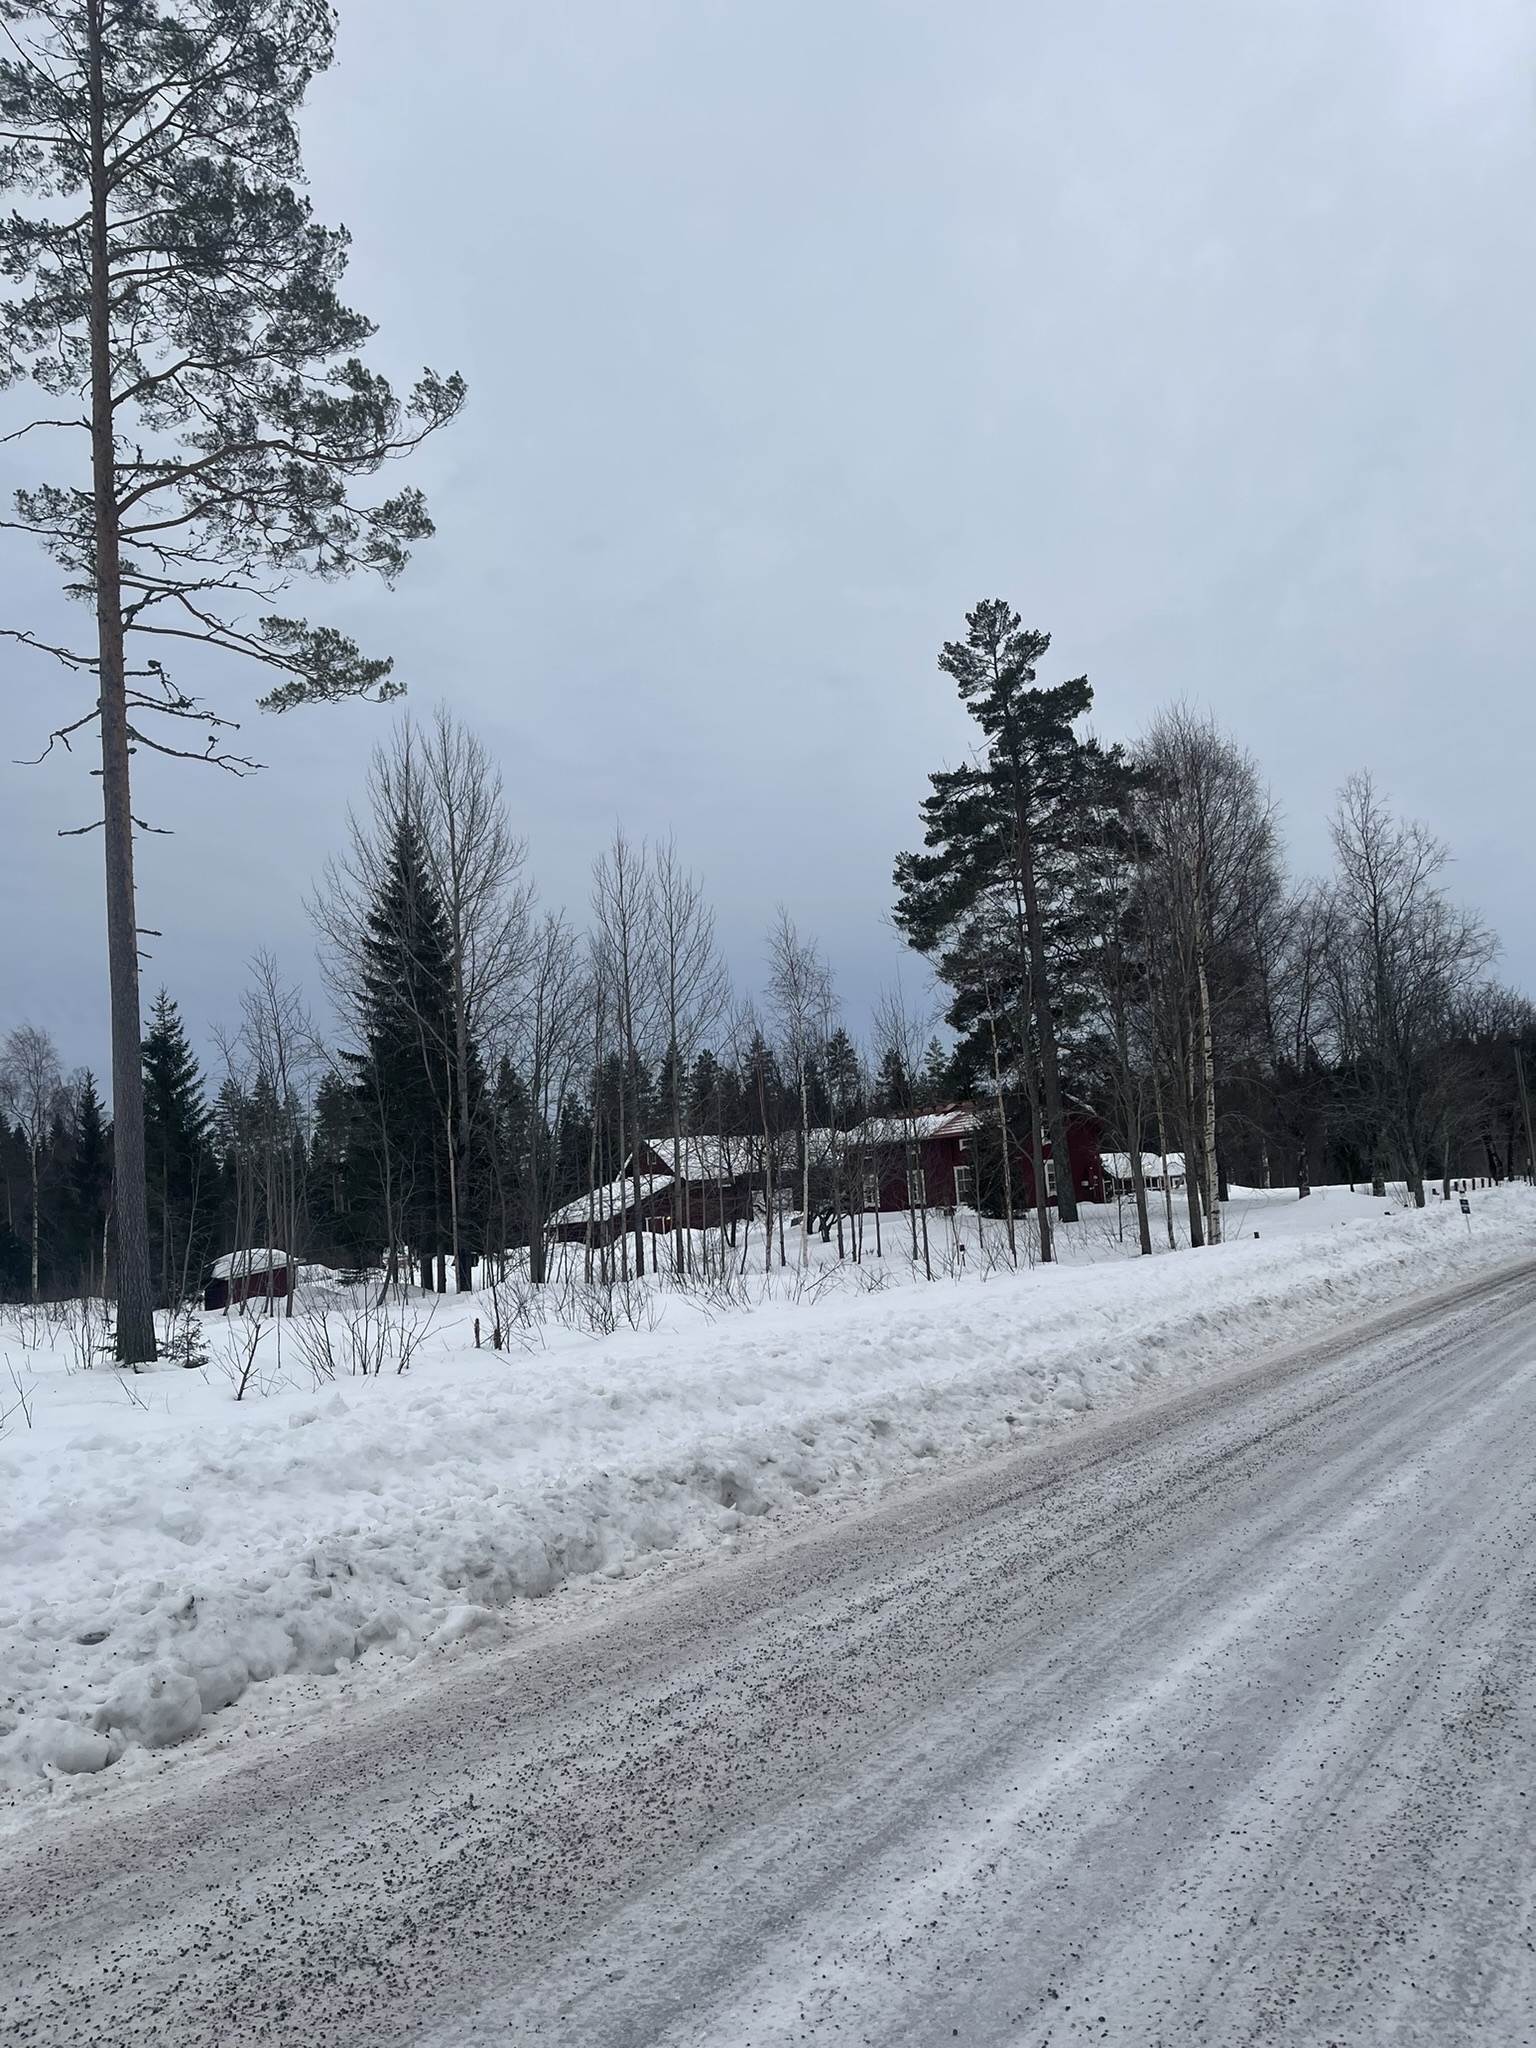  (Шведский север был очень идиллическим. Пока не съедешь с дороги и не уйдешь в глухой лес.)